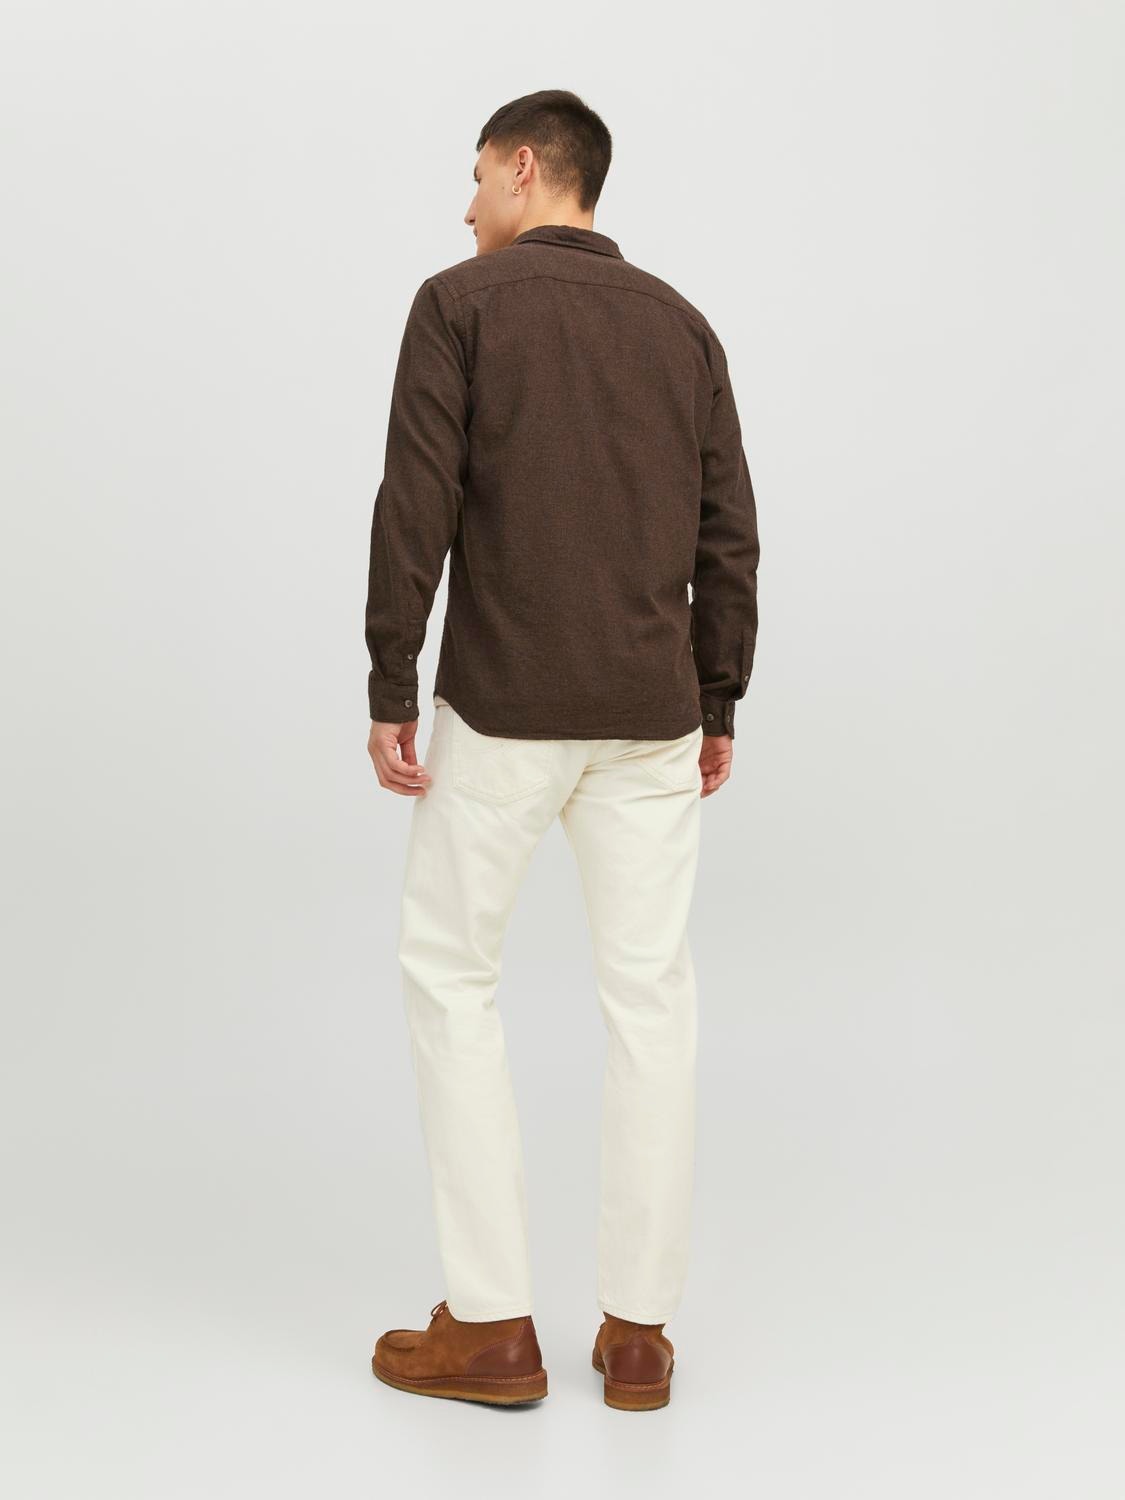 Jack & Jones Slim Fit Overhemd -Seal Brown - 12235974